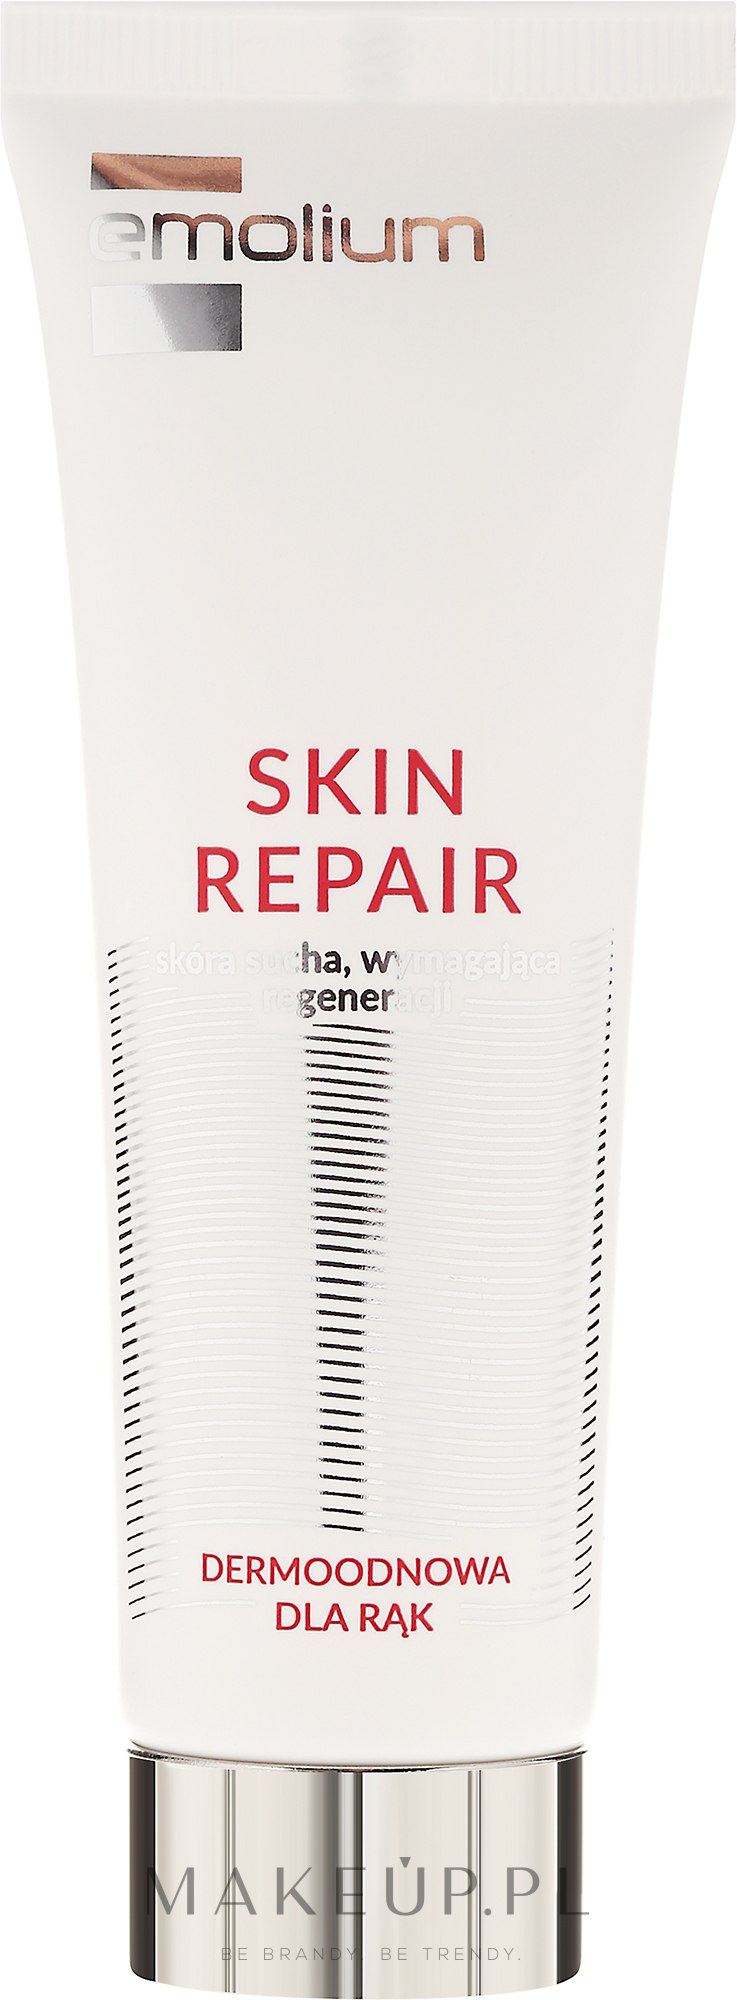 Dermoodnowa do rąk do skóry suchej i wymagającej regeneracji - Emolium Skin Repair — Zdjęcie 40 ml